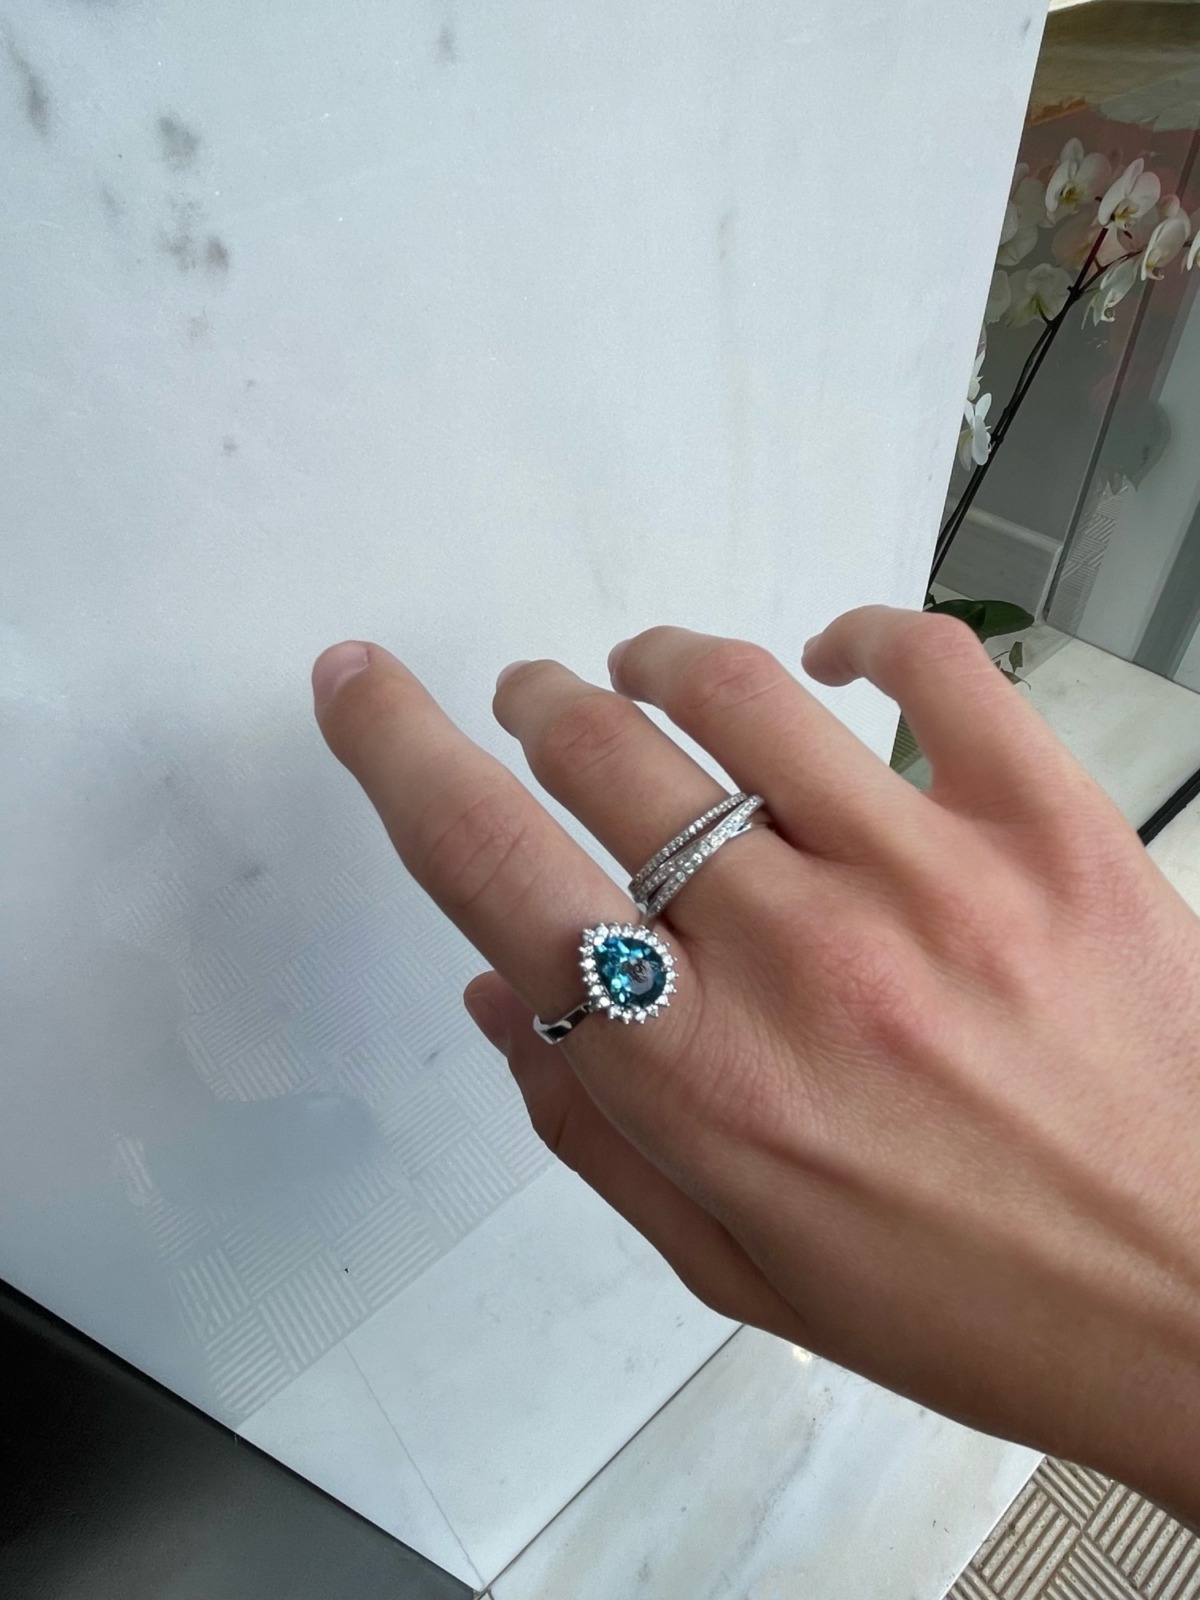 δαχτυλιδι με μπλε πετρα και διαμαντια, λευκοχρυσο δαψτυλιδι 18καρατια